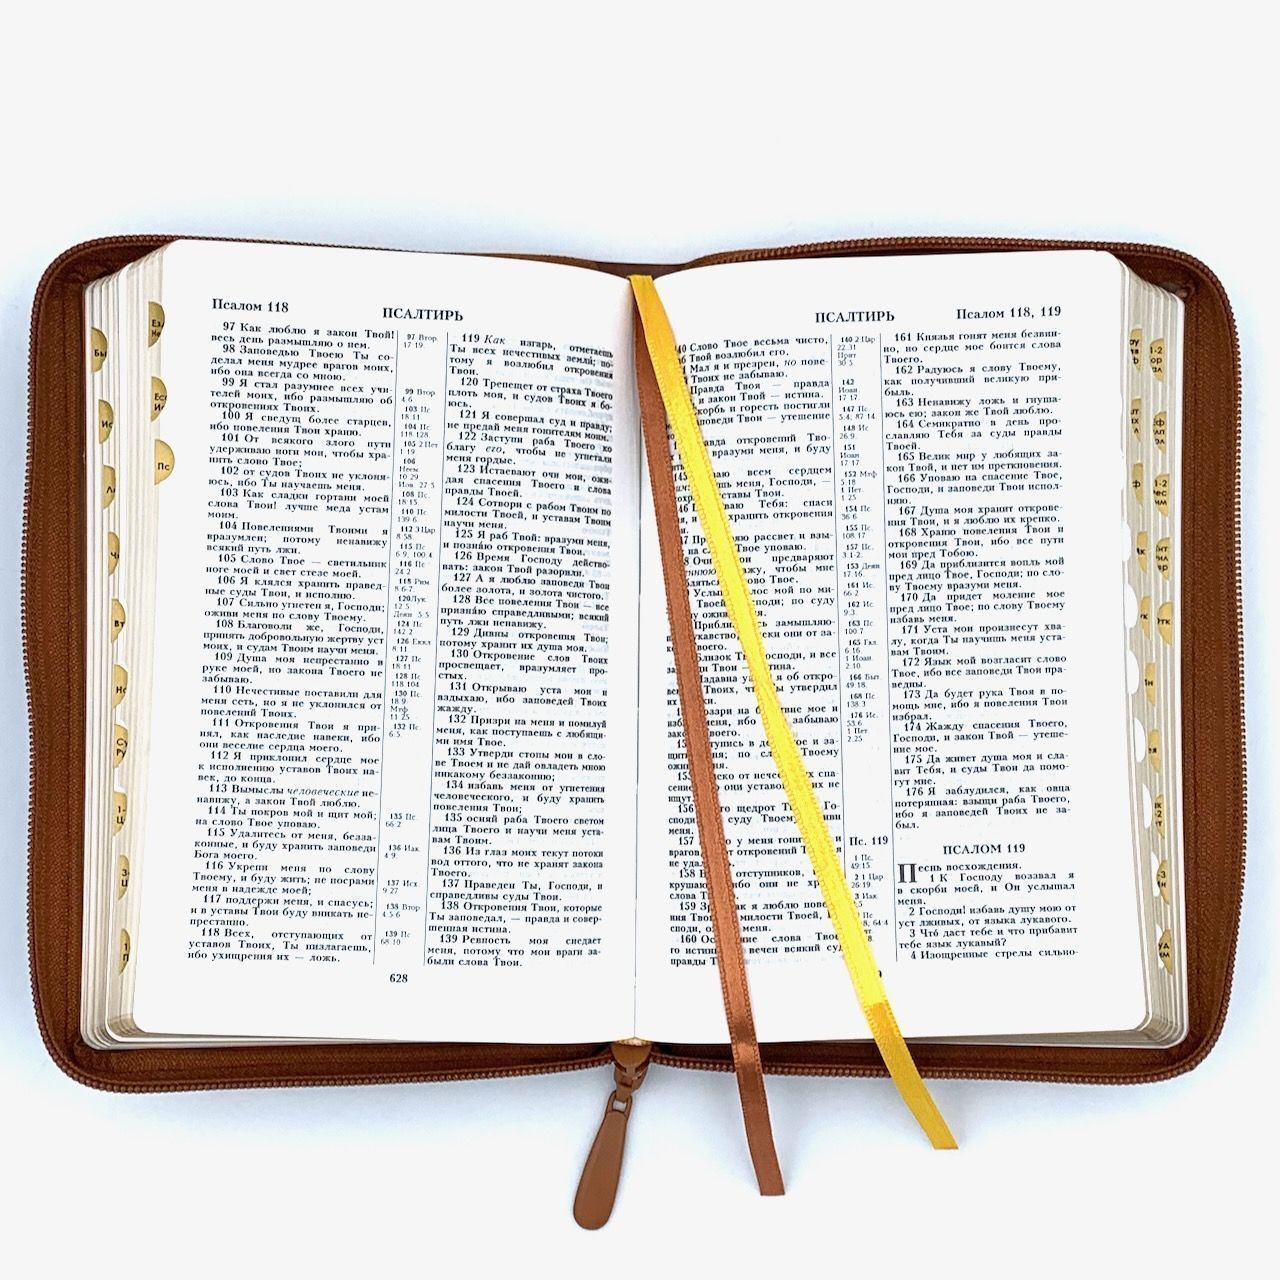 Библия 053zti код A11 надпись "Библия", кожаный переплет на молнии с индексами, цвет светло-коричневый с прожилками, формат 140*202 мм